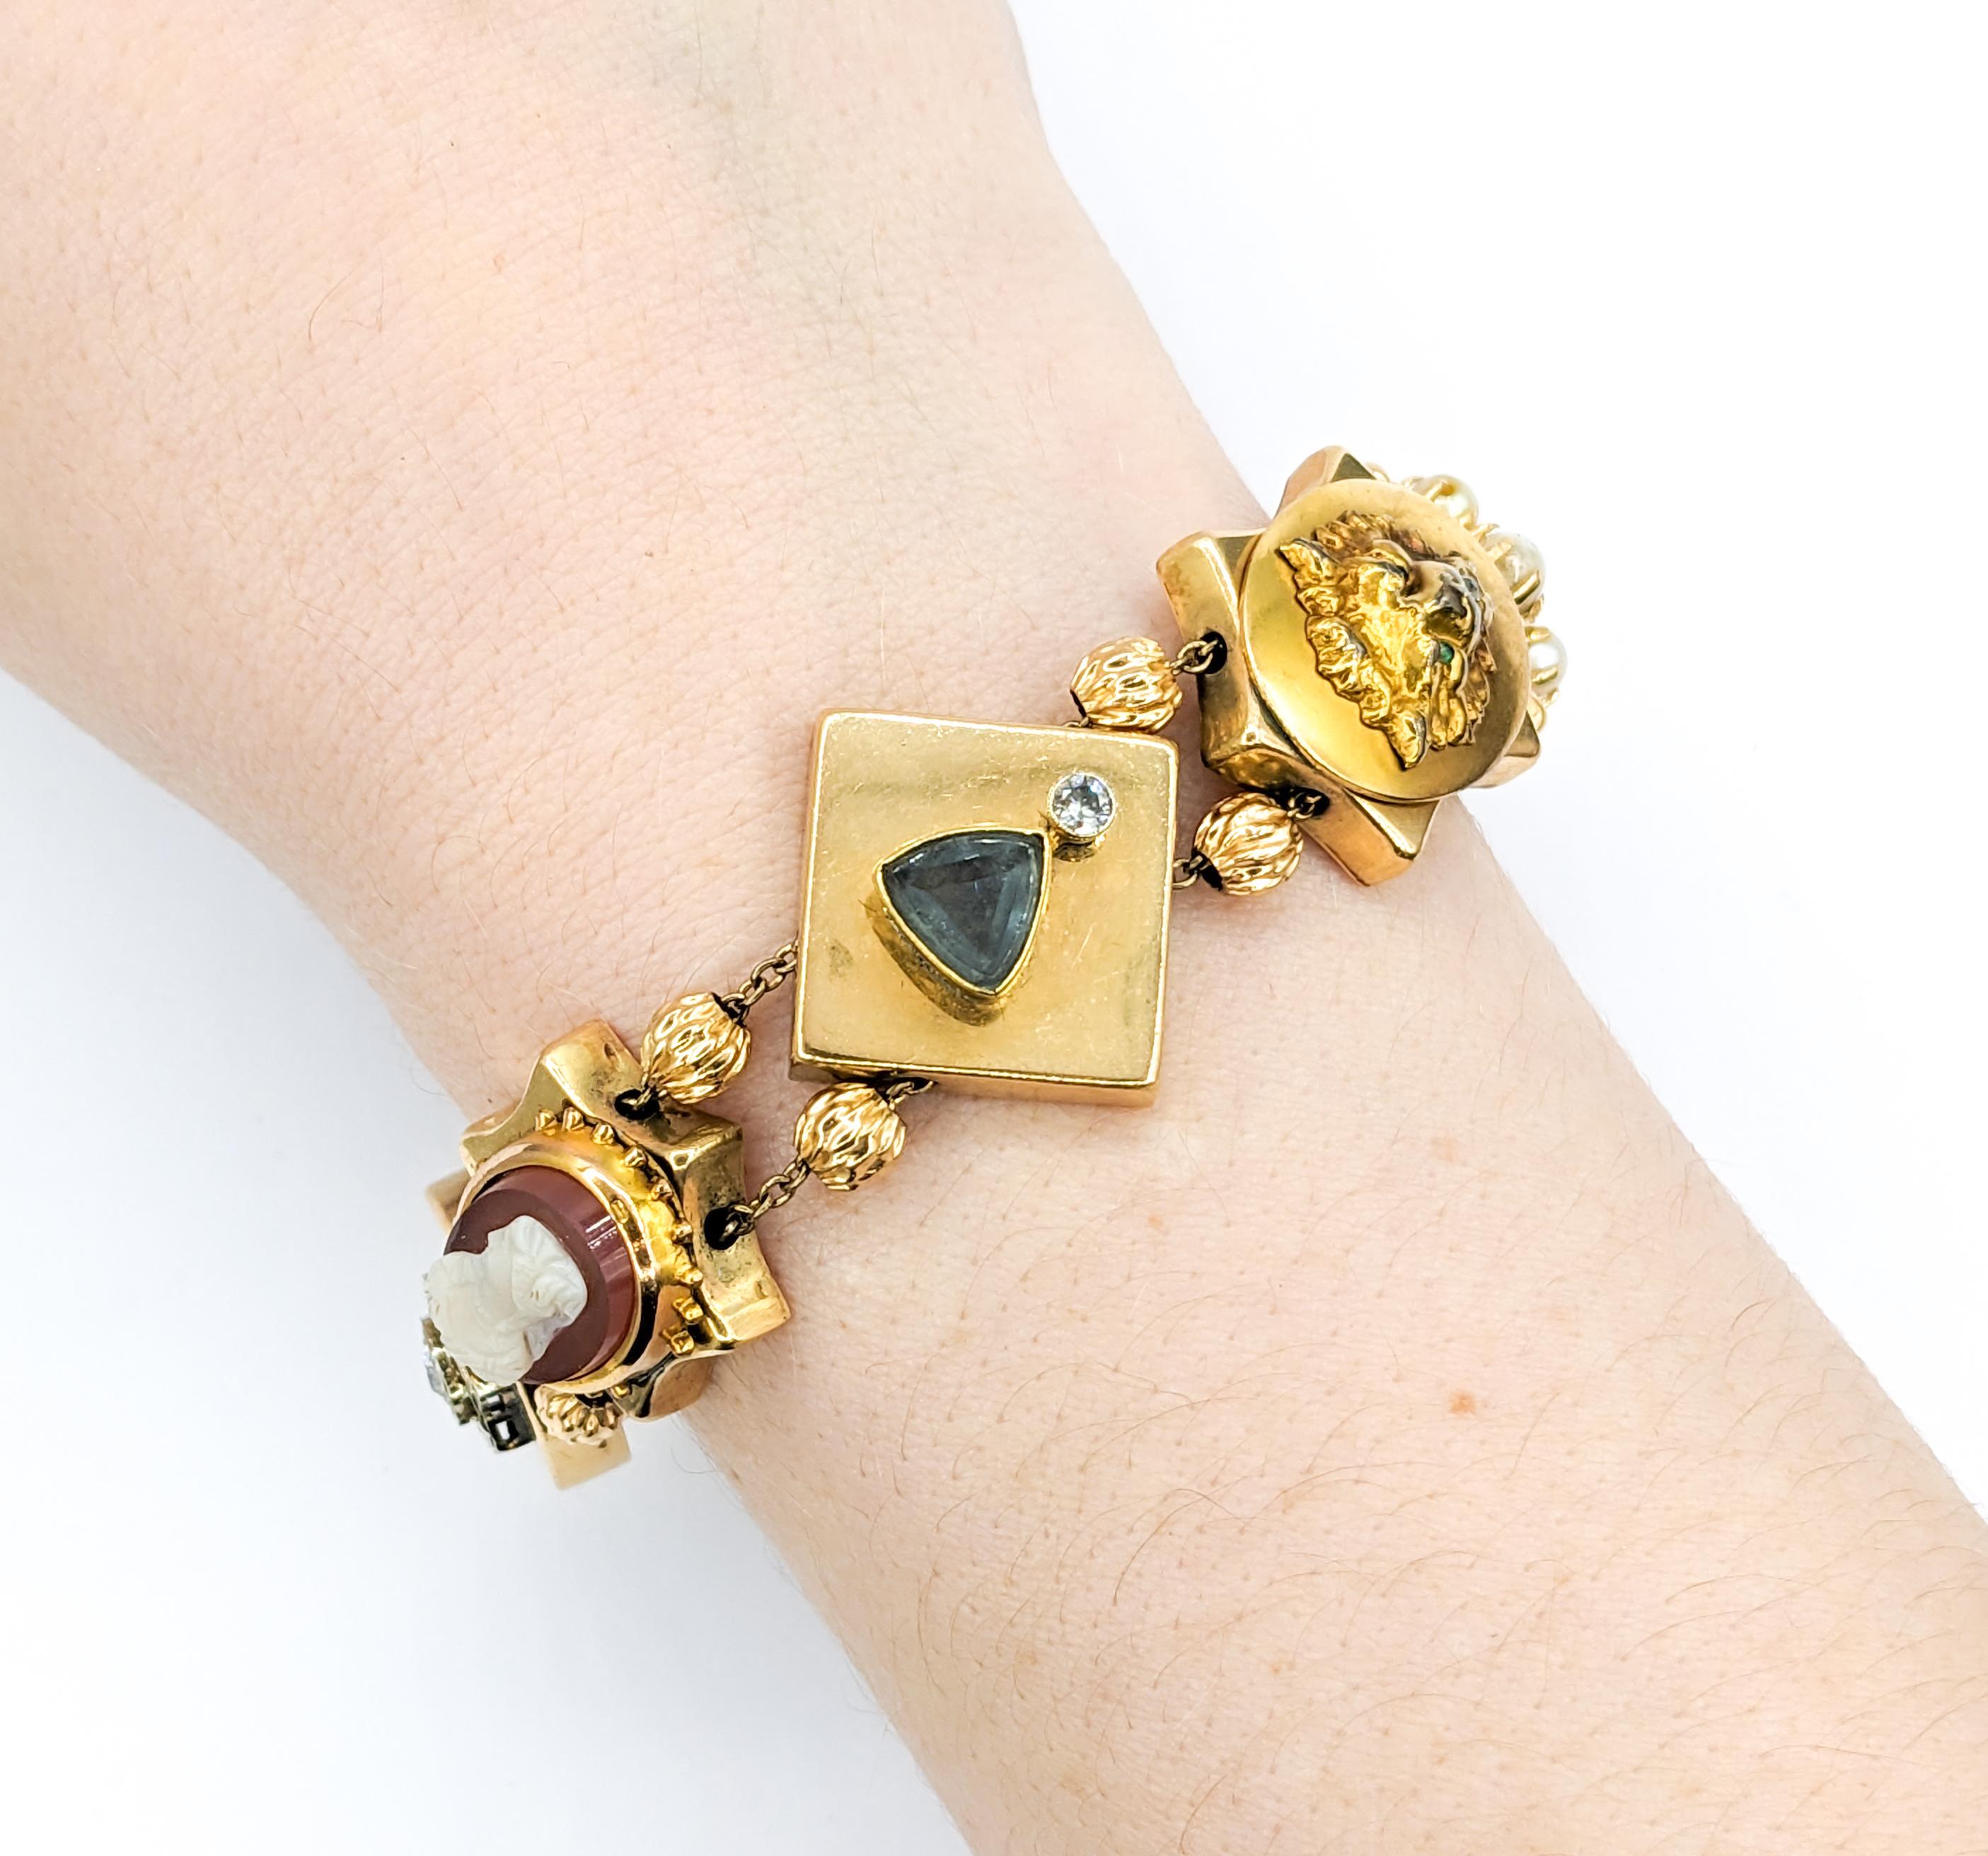 Armband aus Gelbgold mit Diamanten, Smaragden, Rubinen und Perlen-Edelsteinen an der Pin Slide

Wir präsentieren ein skurriles, individuelles Vintage Slider-Armband, das meisterhaft aus 14-karätigem Gelbgold gefertigt ist. Dieses einzigartige